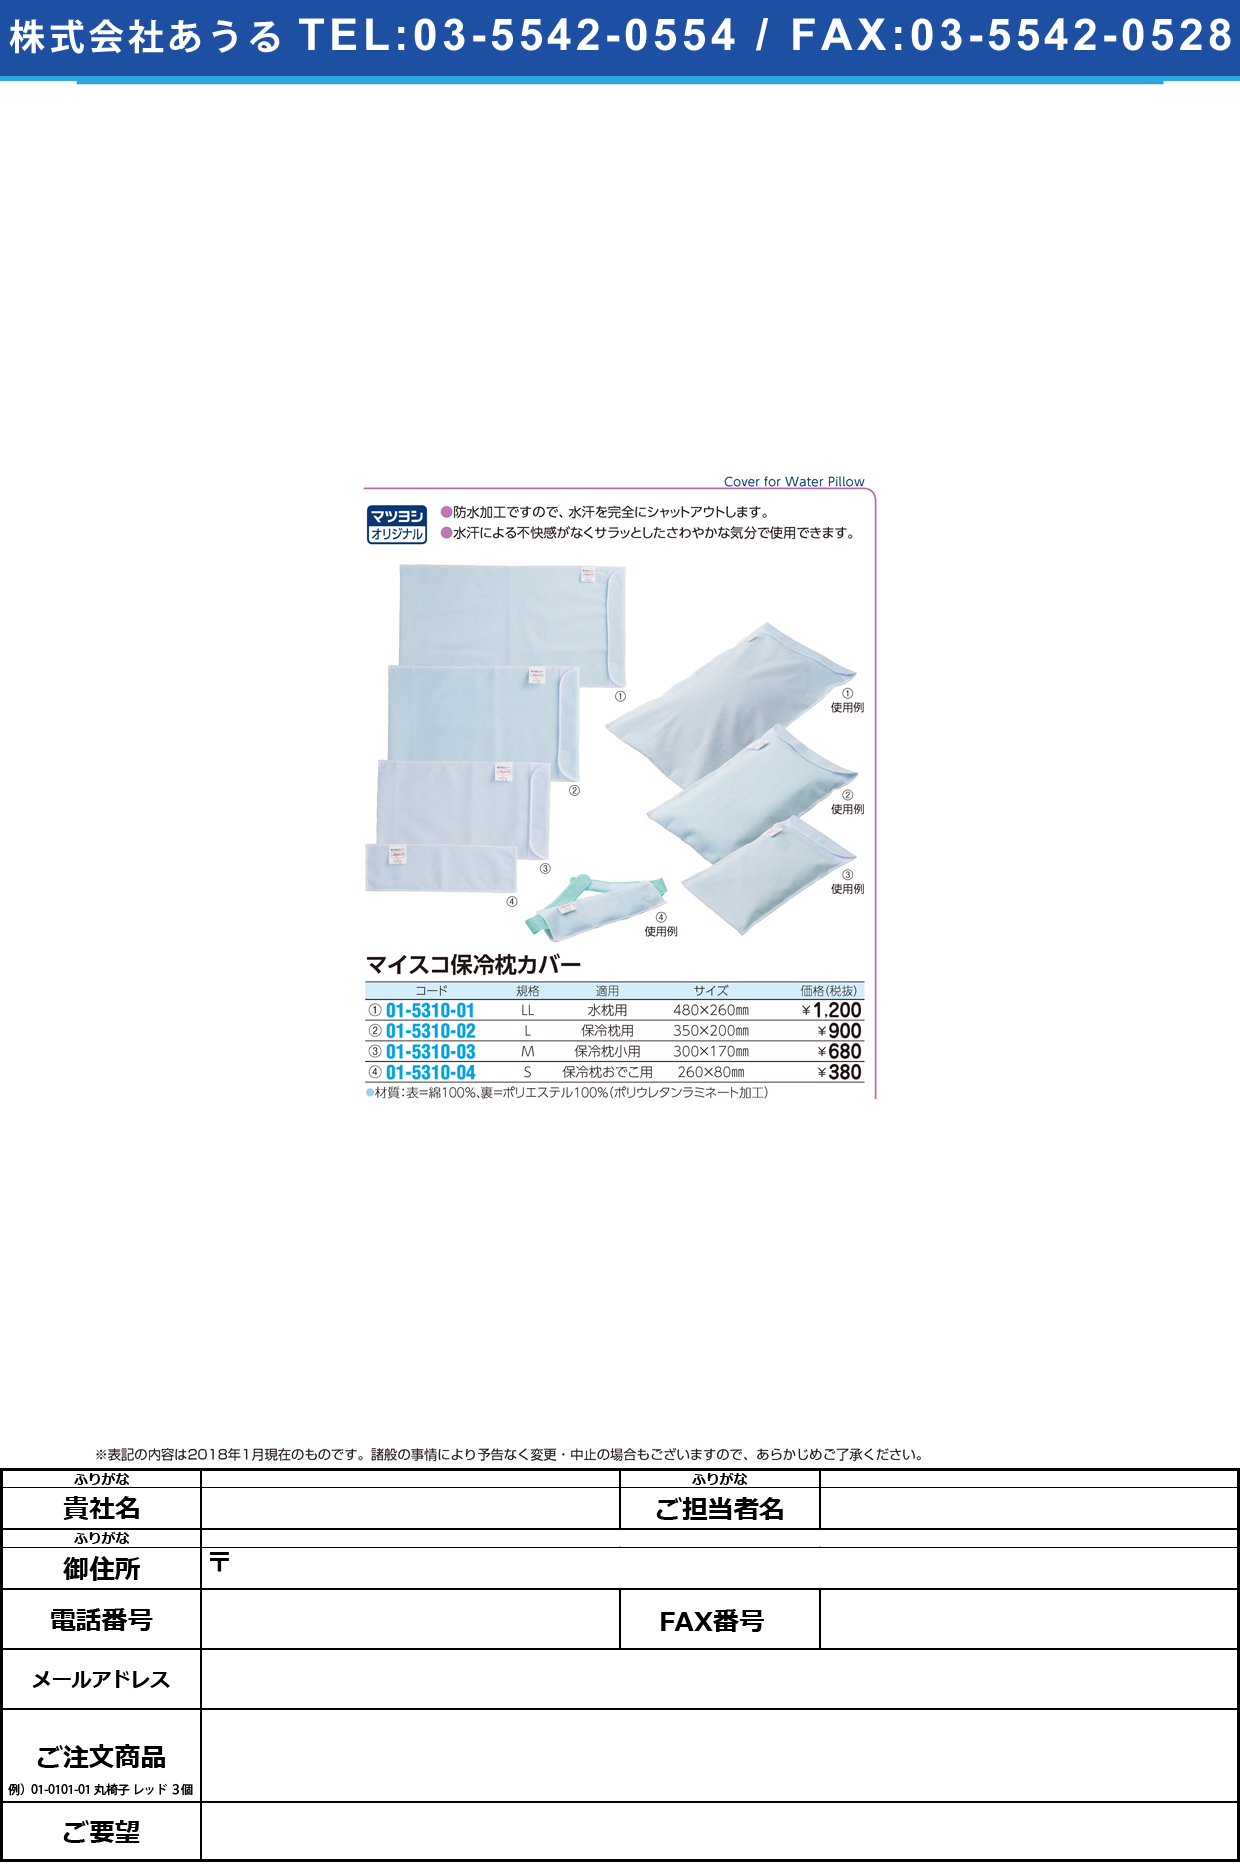 (01-5310-02)マイスコ保冷枕カバー（防水カバー） L･ﾎﾚｲﾏｸﾗﾖｳ(350X200MM ﾏｲｽｺﾎﾚｲﾏｸﾗｶﾊﾞｰ(ﾎﾞｳｽｲ【1枚単位】【2018年カタログ商品】